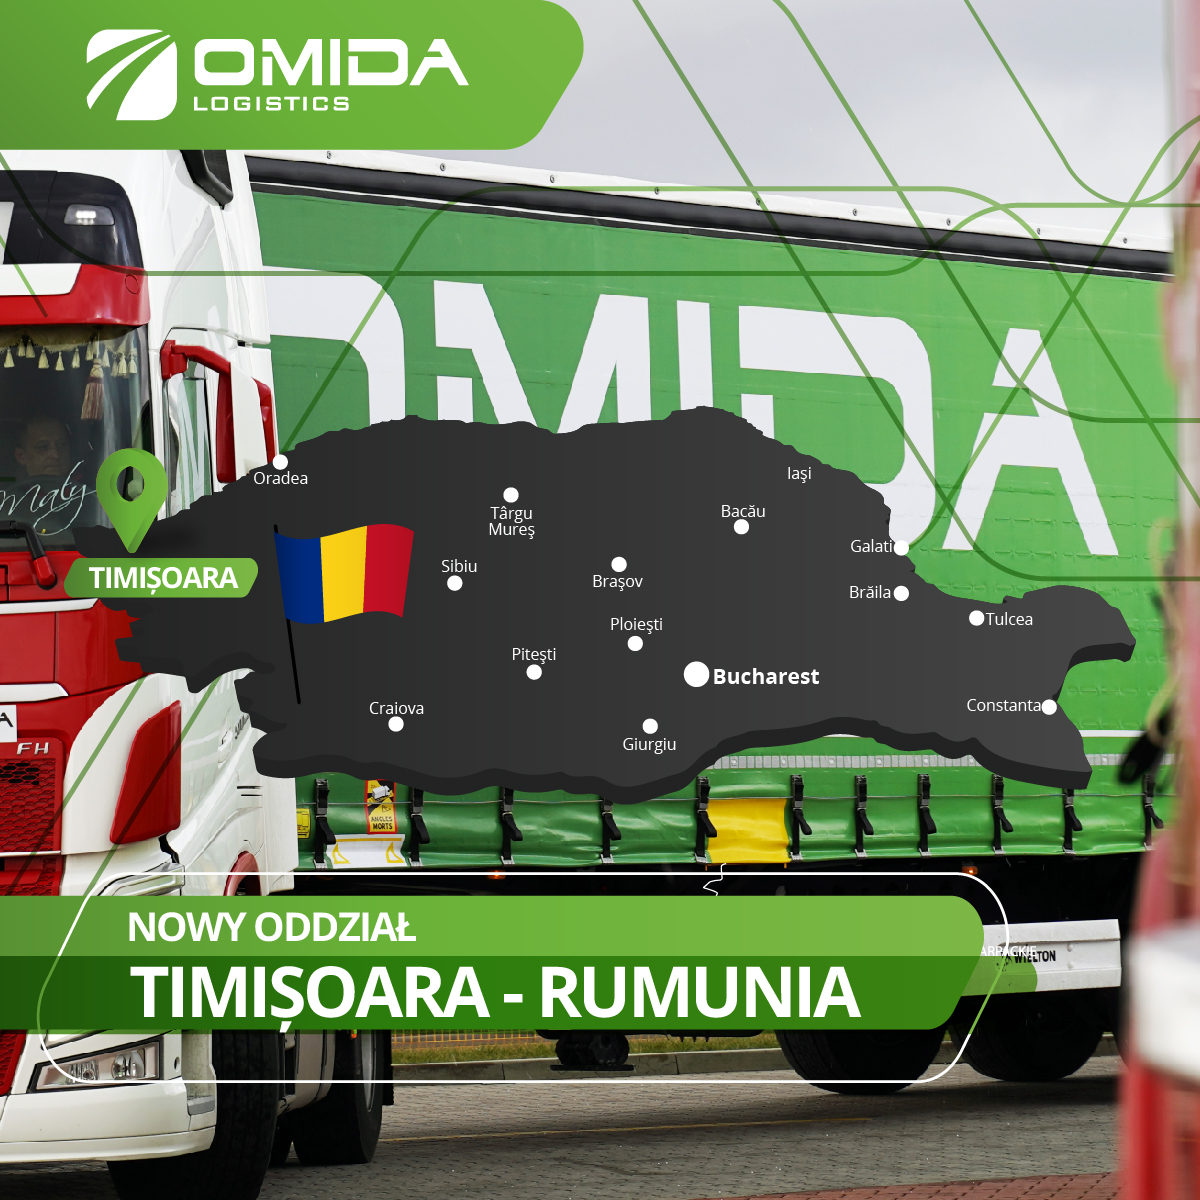 Otwarcie spółki Omida Logistics w Rumunii | Omida Logistics